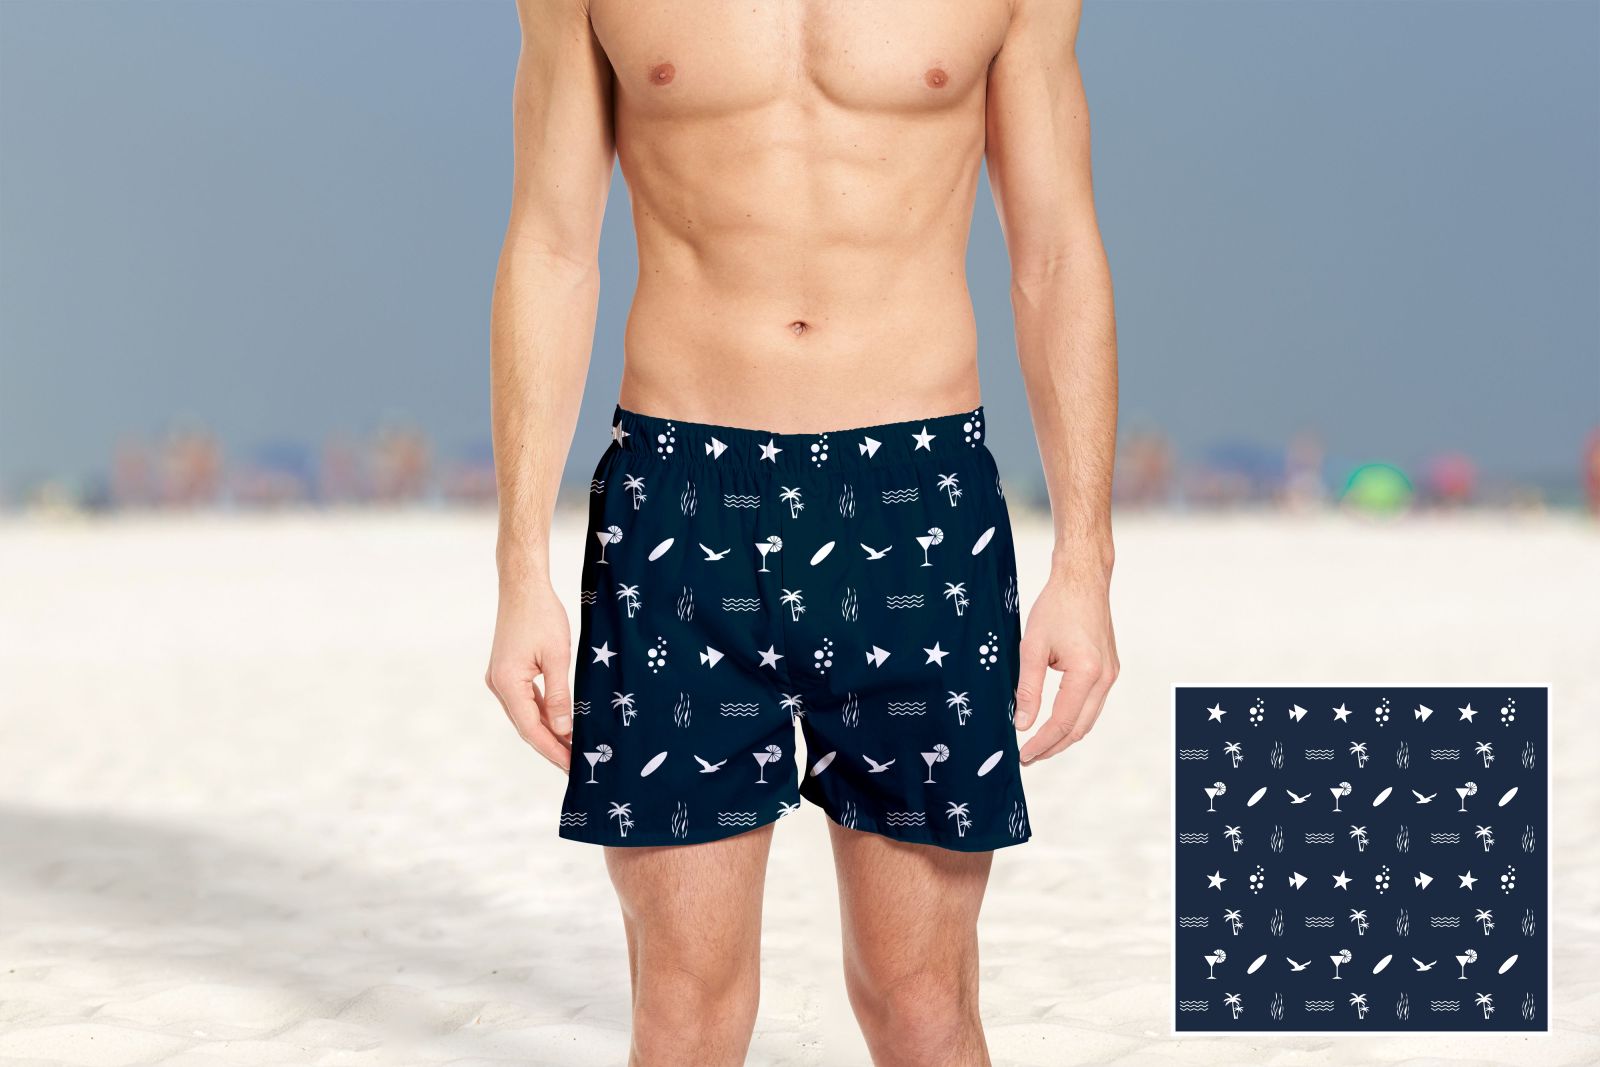 Дизайн рисунка для мужских шорт для плавания  - дизайнер Zero-2606